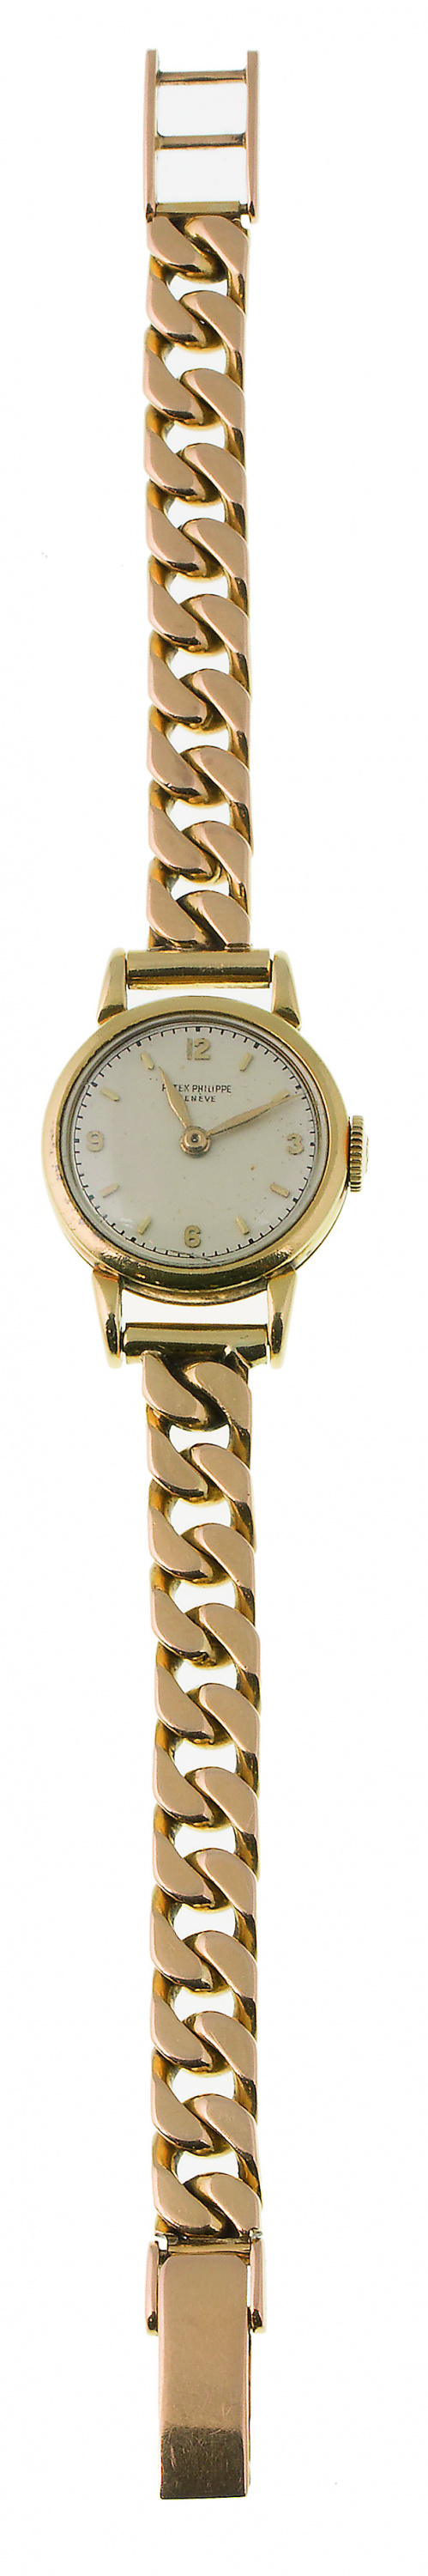 Reloj PATEK PHILLIPPE de señora años 30, en oro de 18K